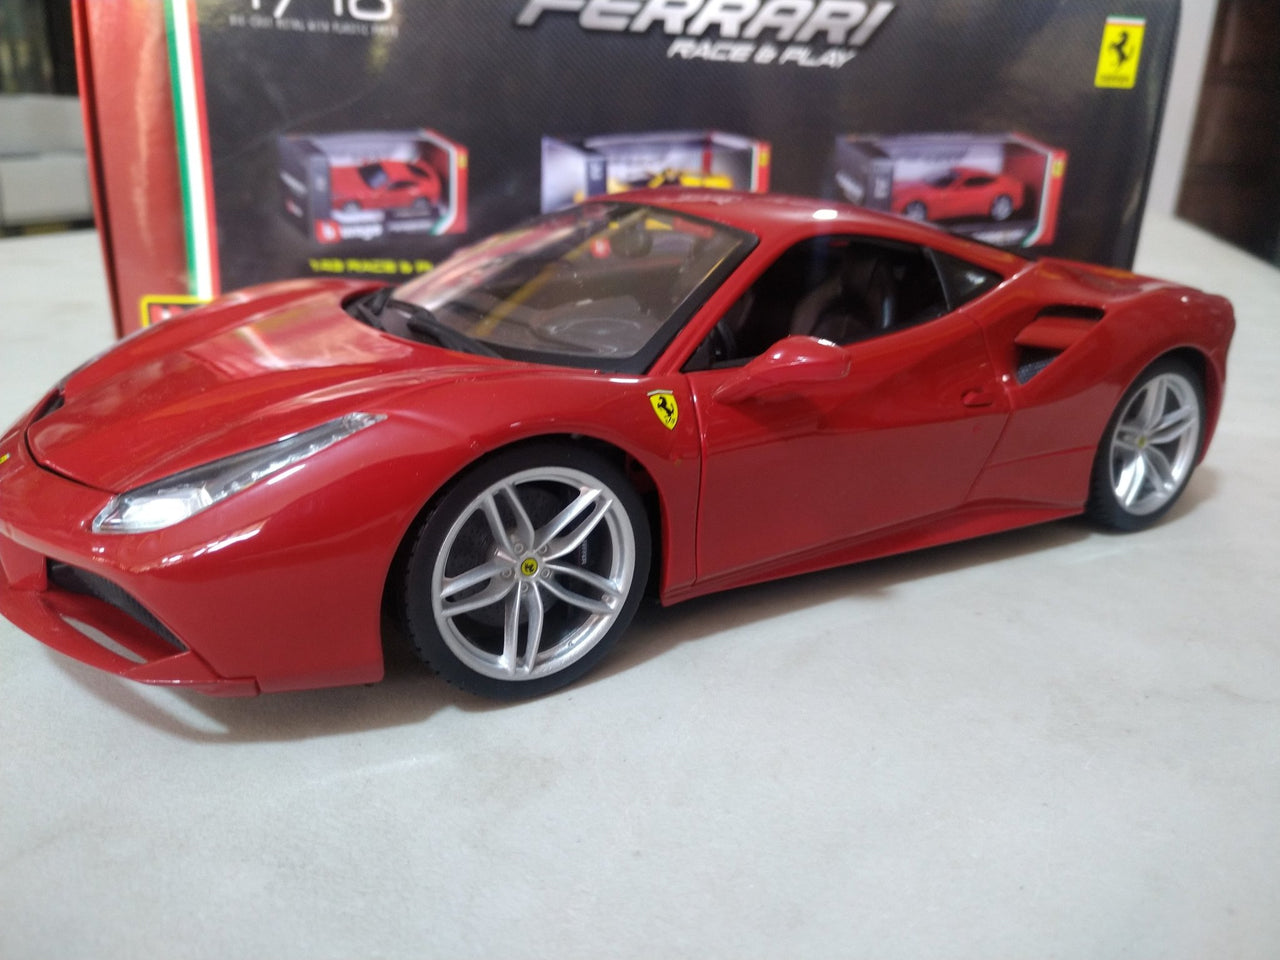 Burago 1/18 Escala Diecast - 18-16008 Ferrari 488 Gtb Rojo